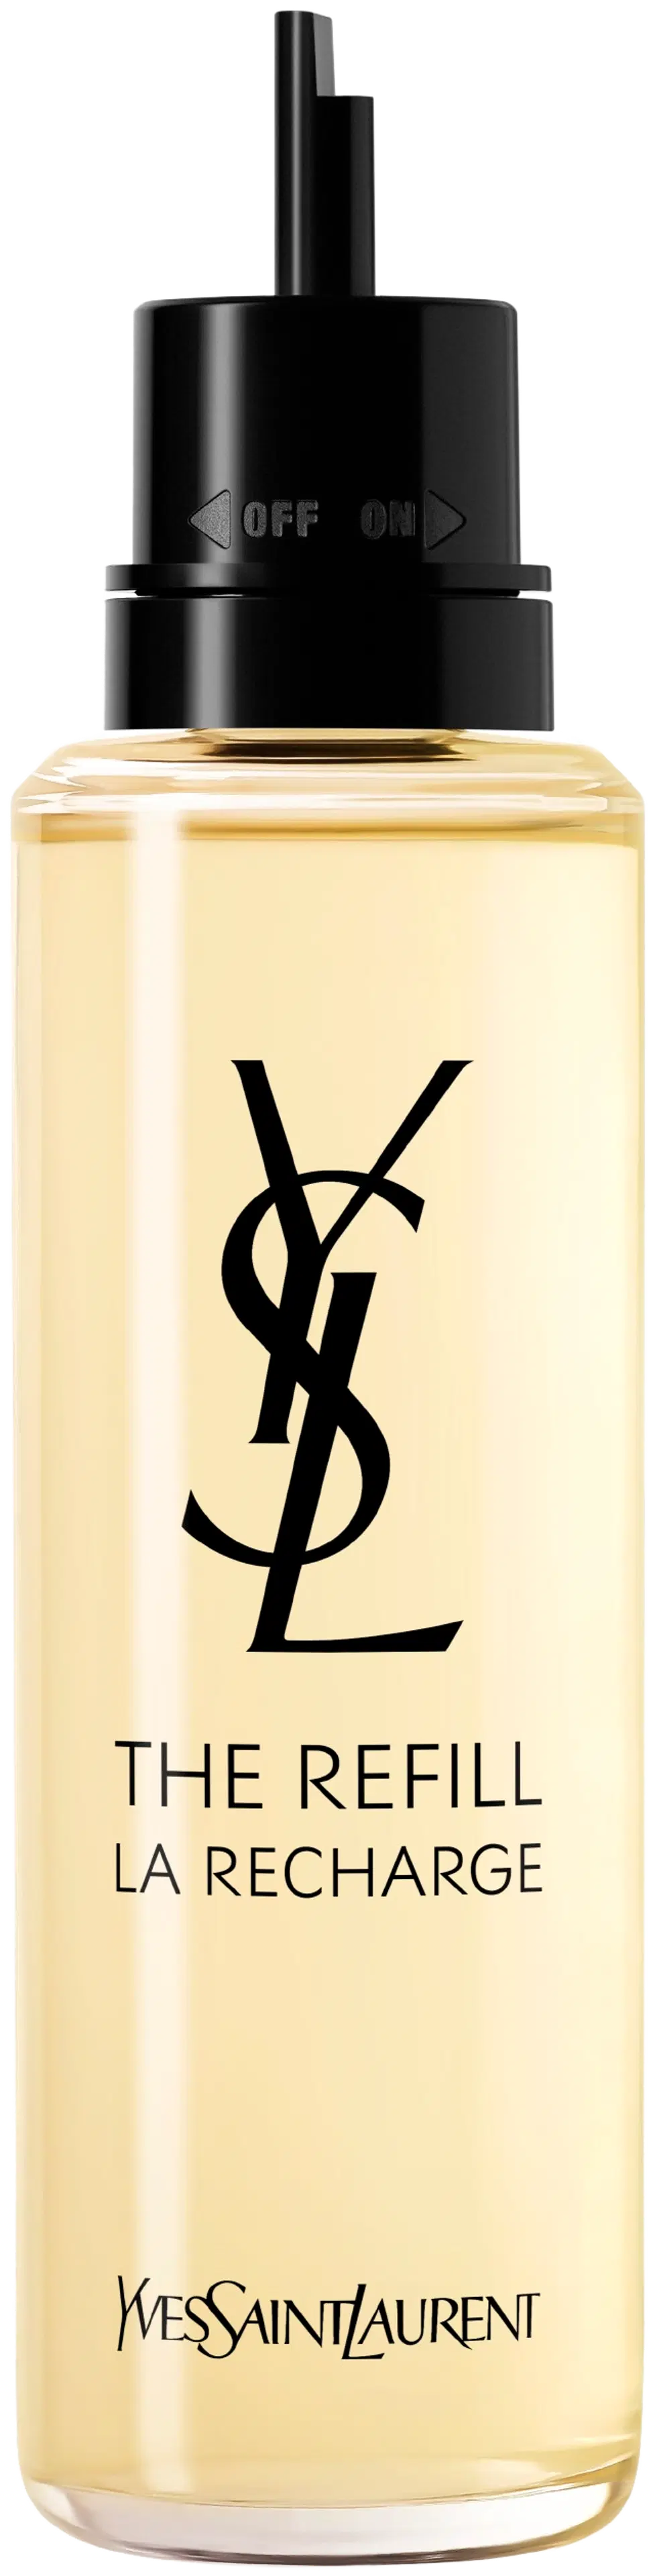 Yves Saint Laurent Libre EdP Refill tuoksun täyttöpakkaus 100 ml